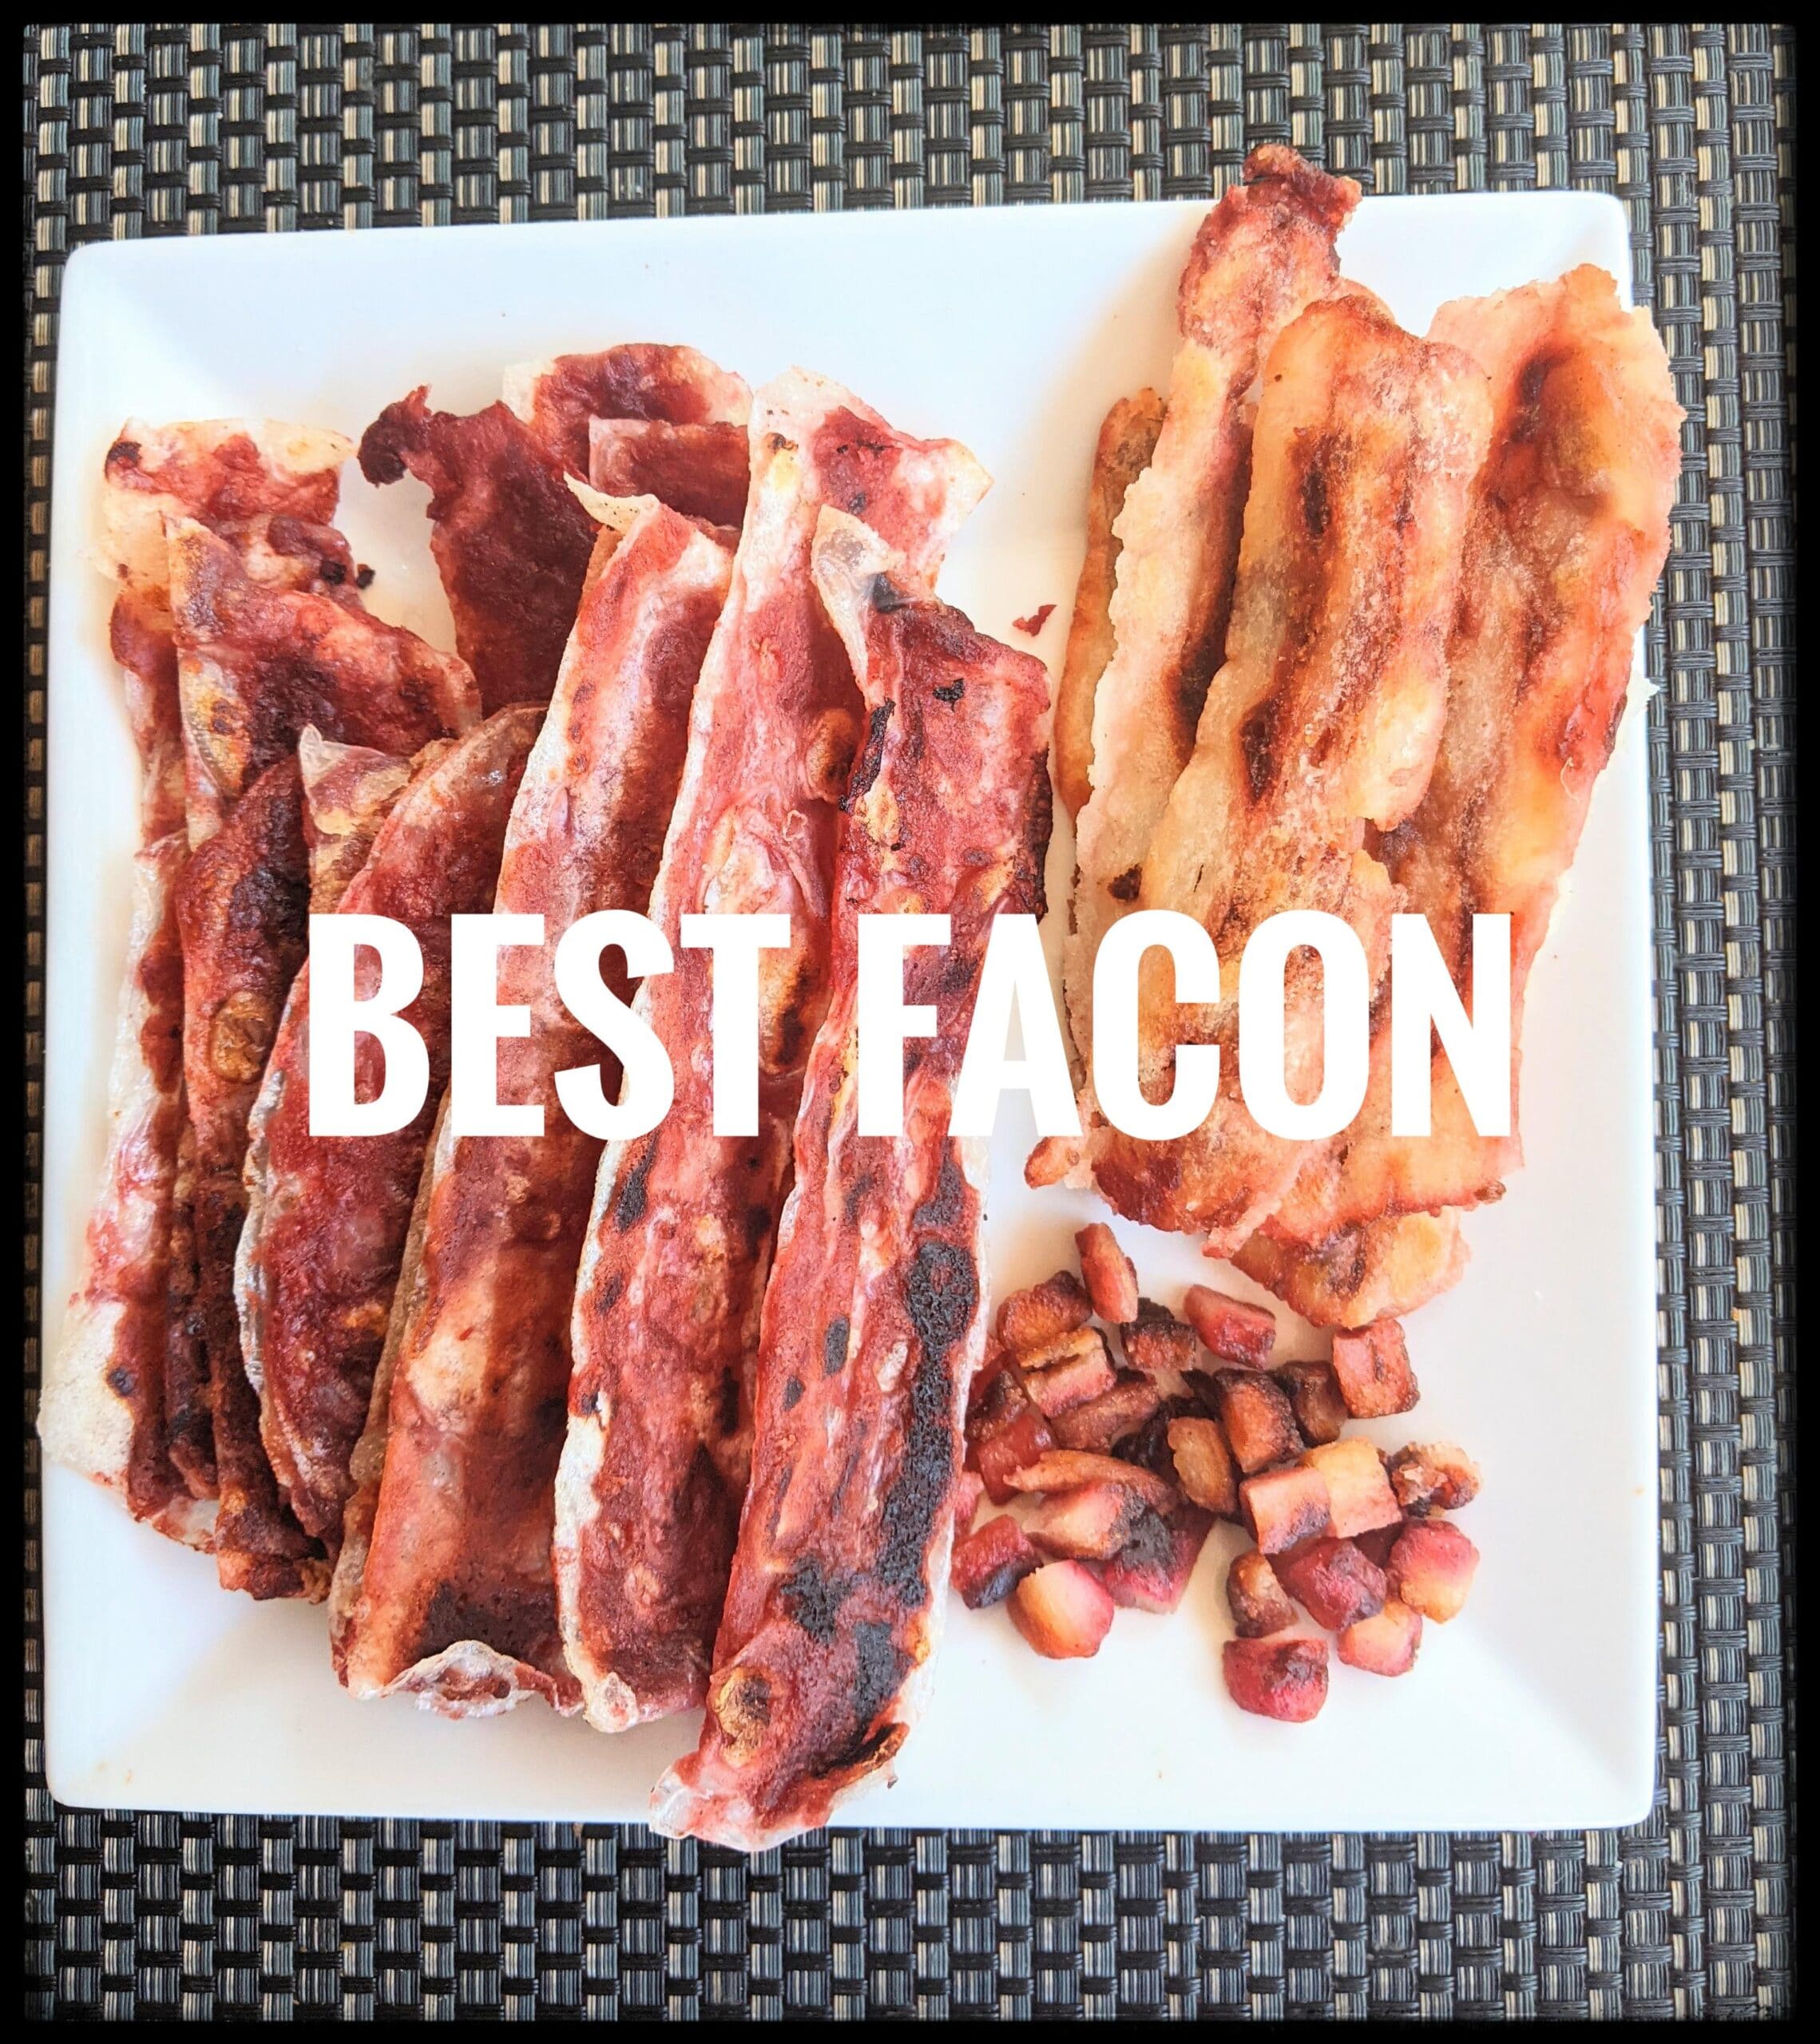 Homemade vegan bacon